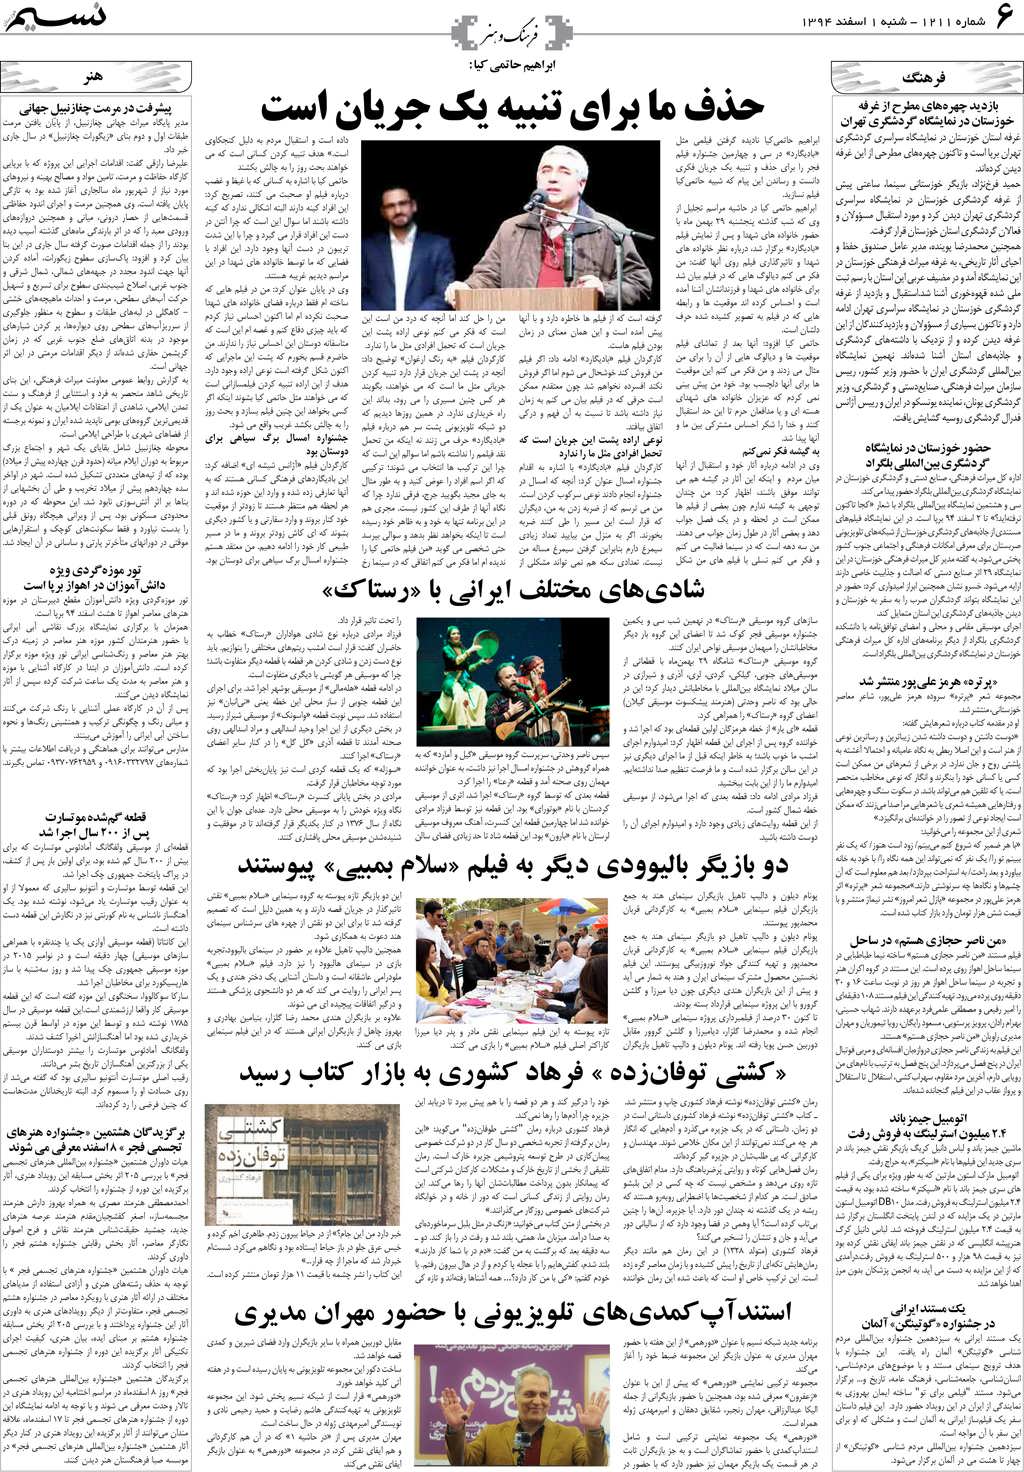 صفحه فرهنگ و هنر روزنامه نسیم شماره 1211